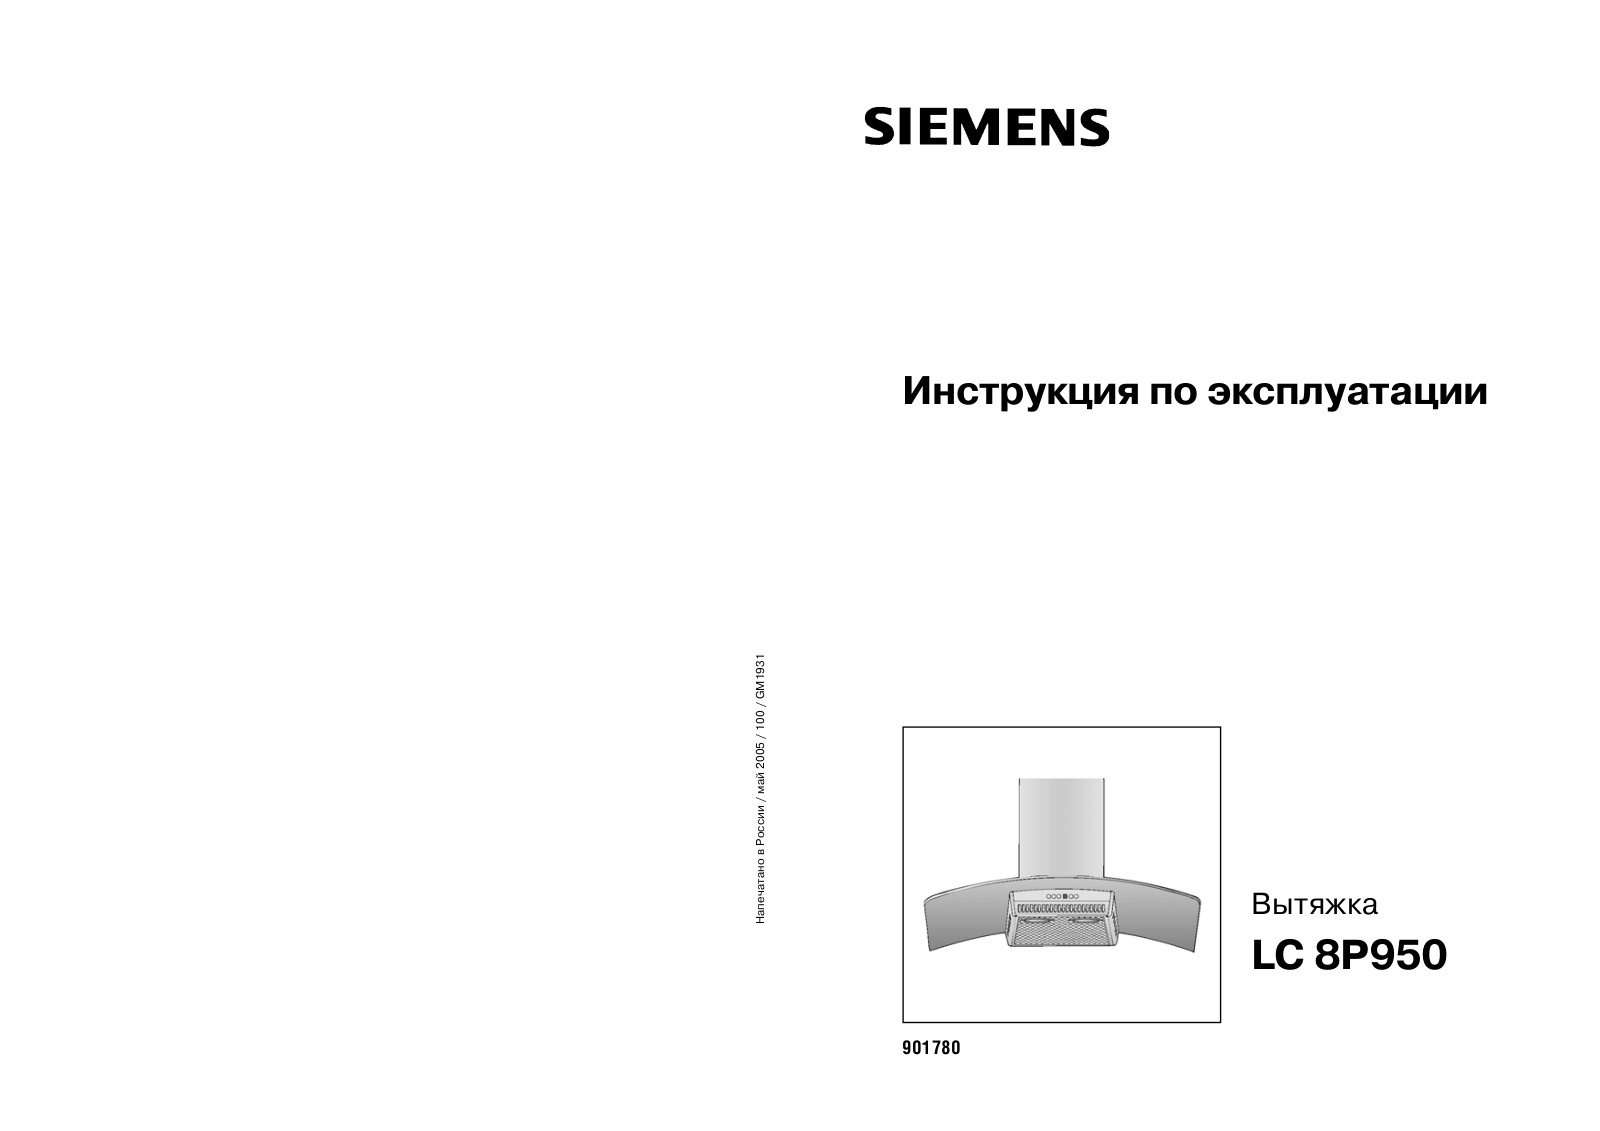 SIEMENS LC 8P950 User Manual